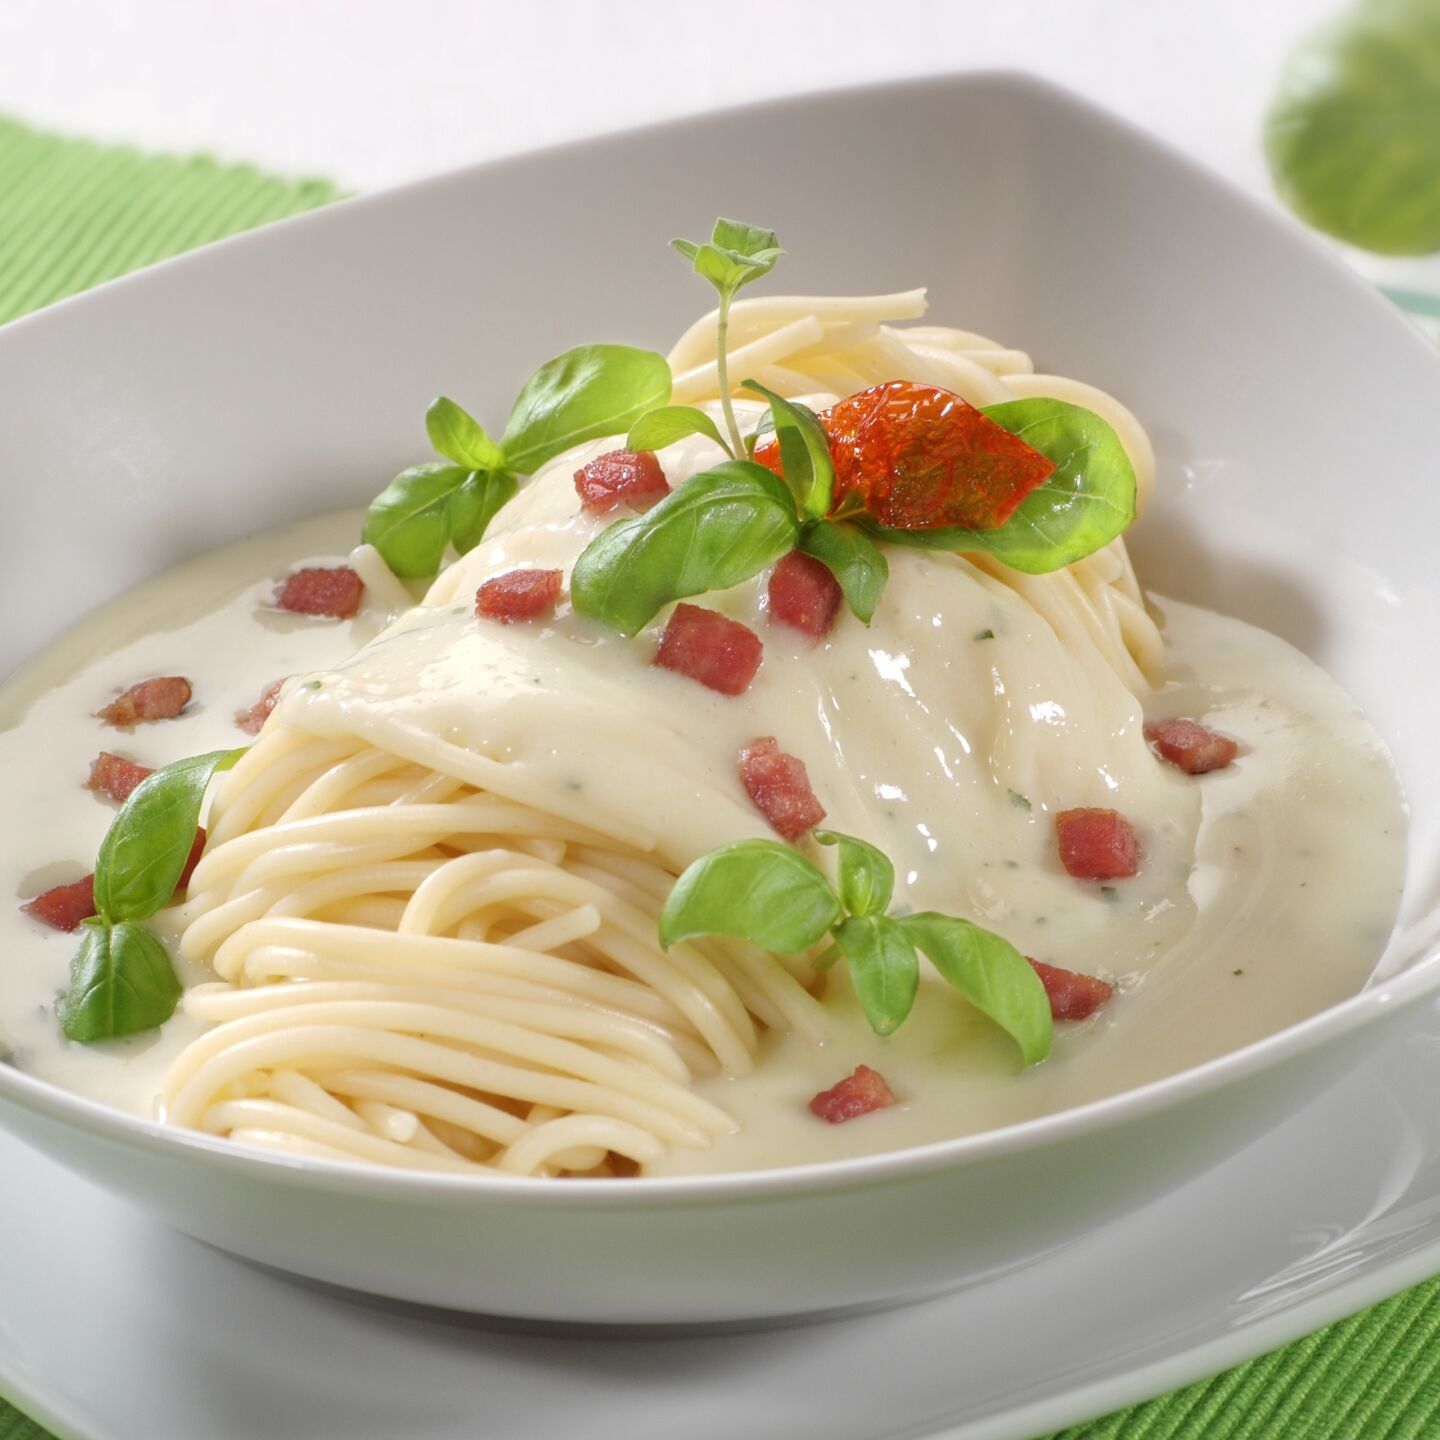 Types of pasta sauce - carbonara sauce